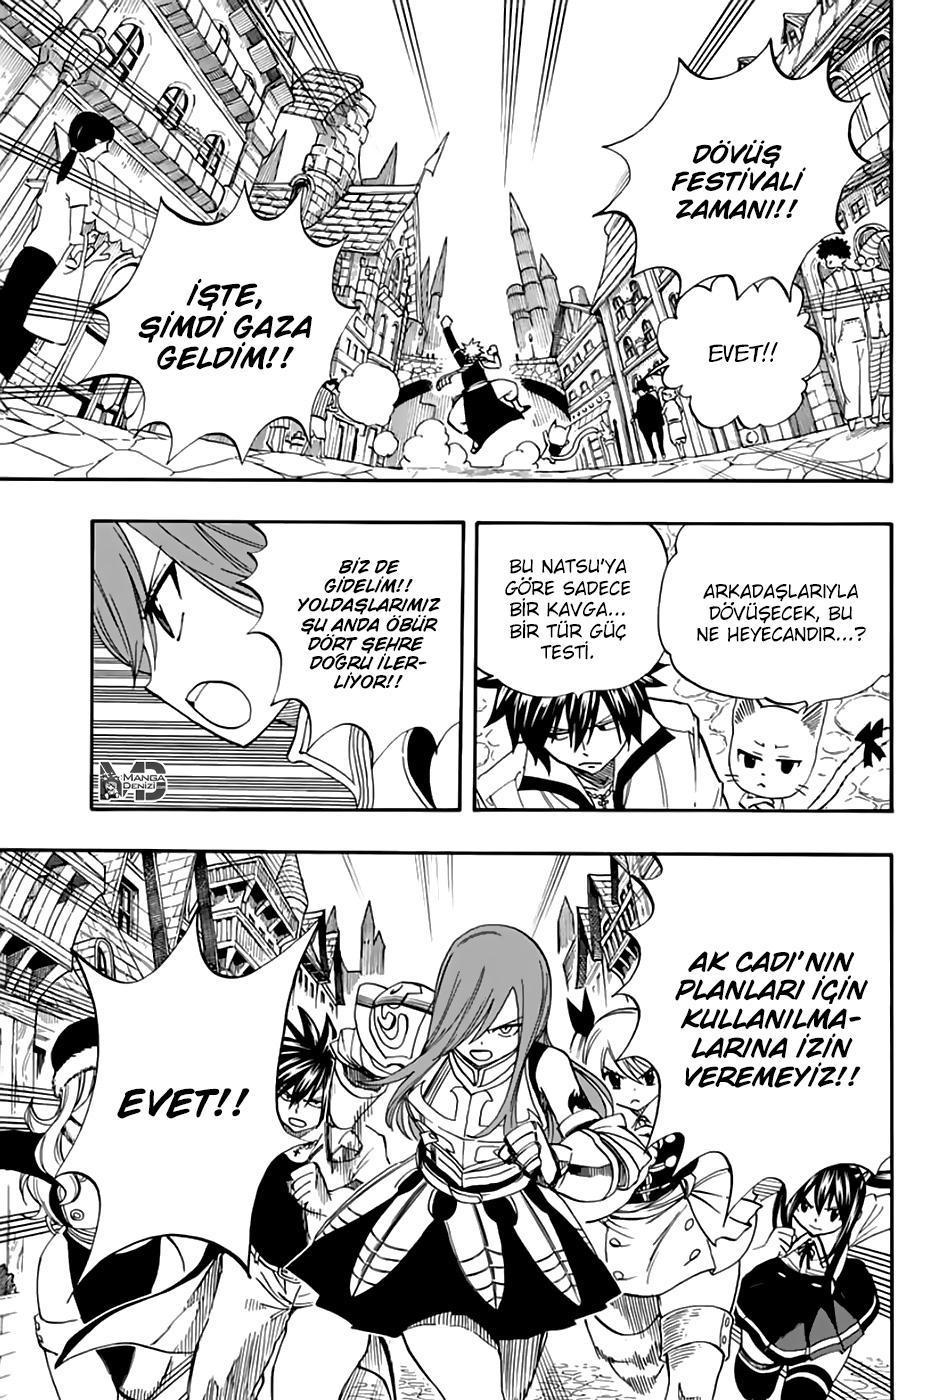 Fairy Tail: 100 Years Quest mangasının 030 bölümünün 4. sayfasını okuyorsunuz.